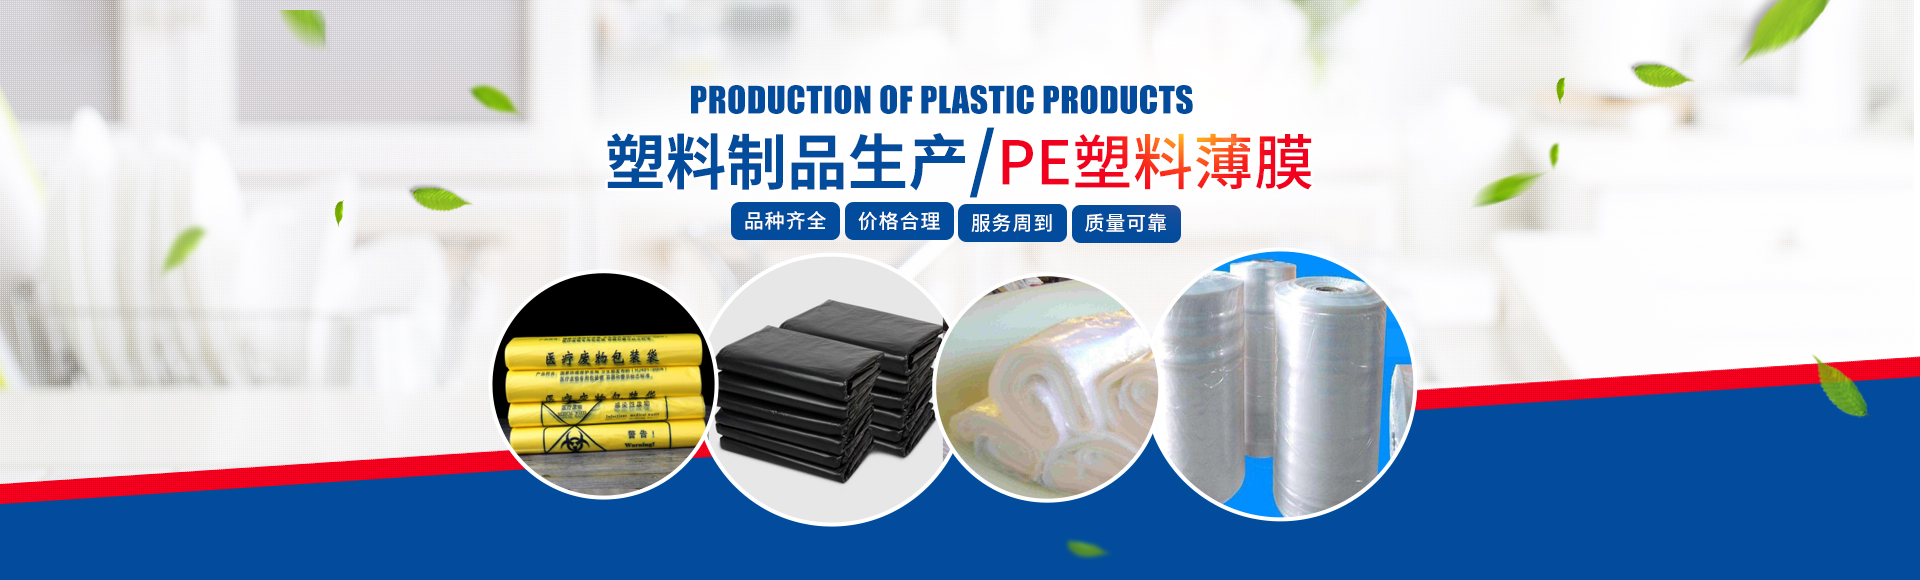 优质塑料制品生产,价格合理PE塑料薄膜